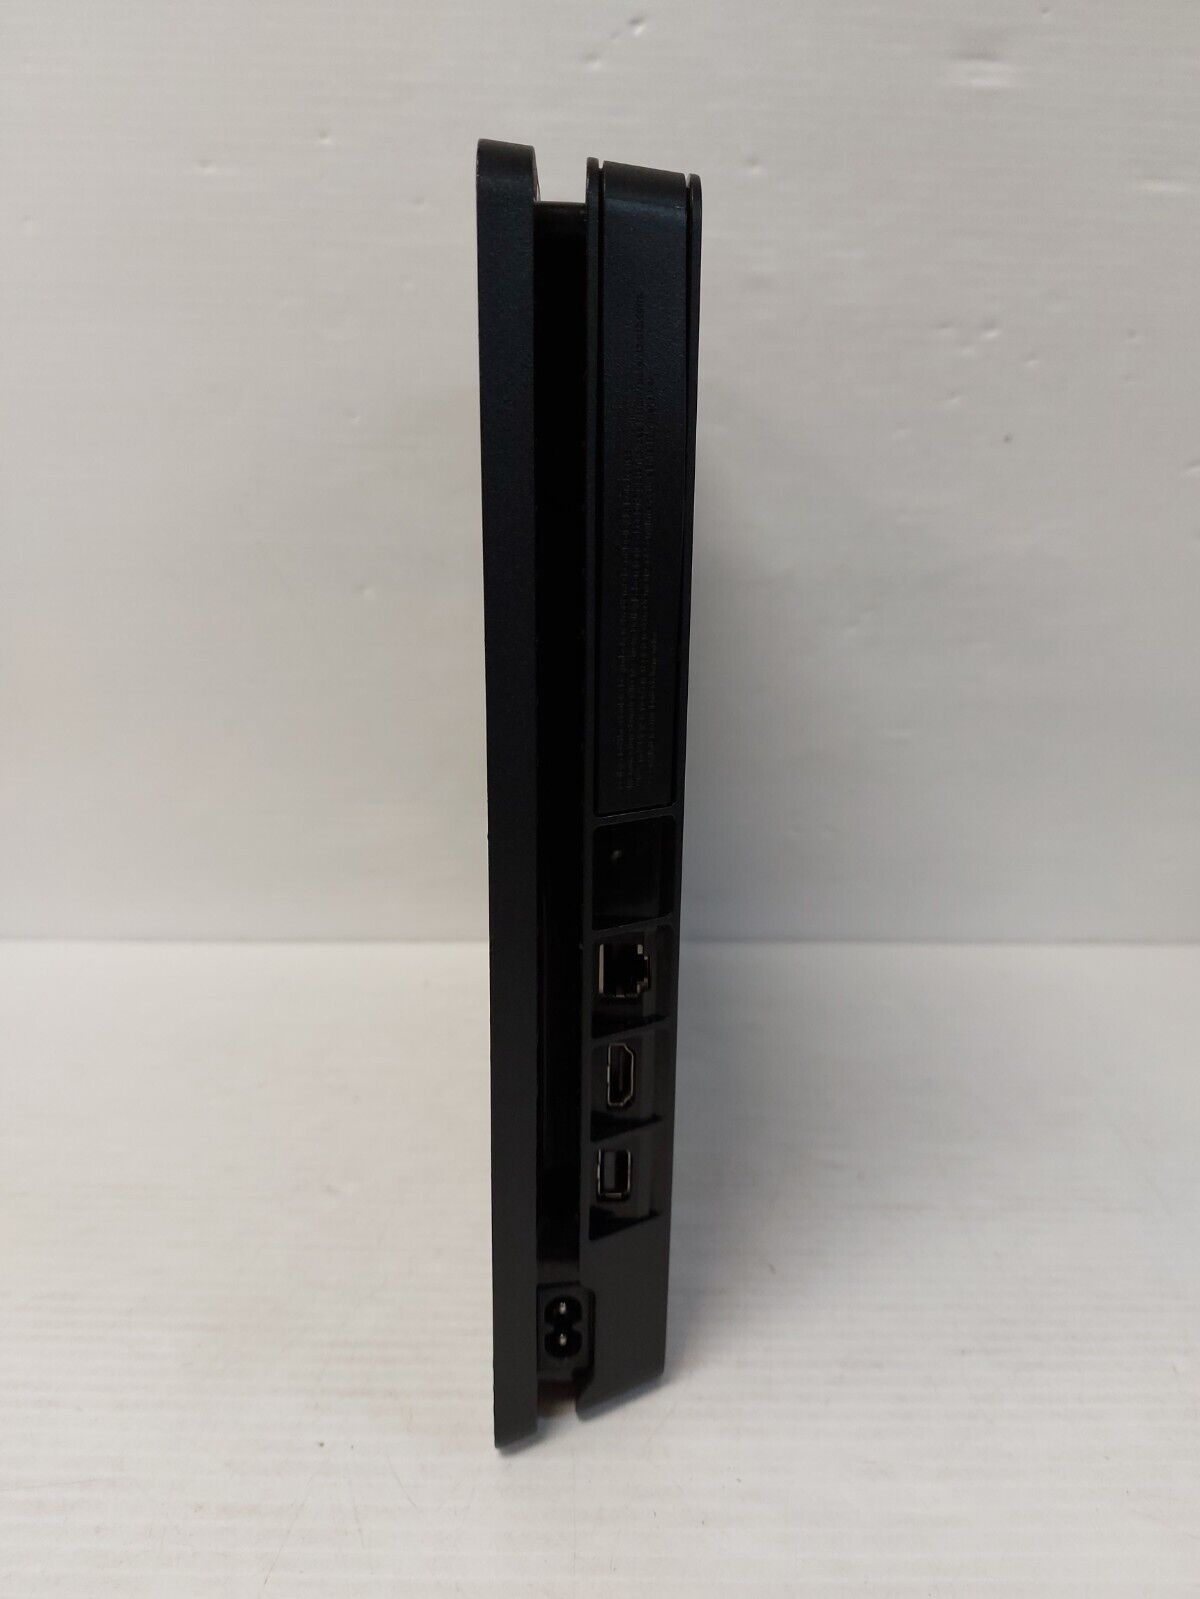 (N78225-1) Sony CUH-2215B PlayStation 4 Slim 1TB